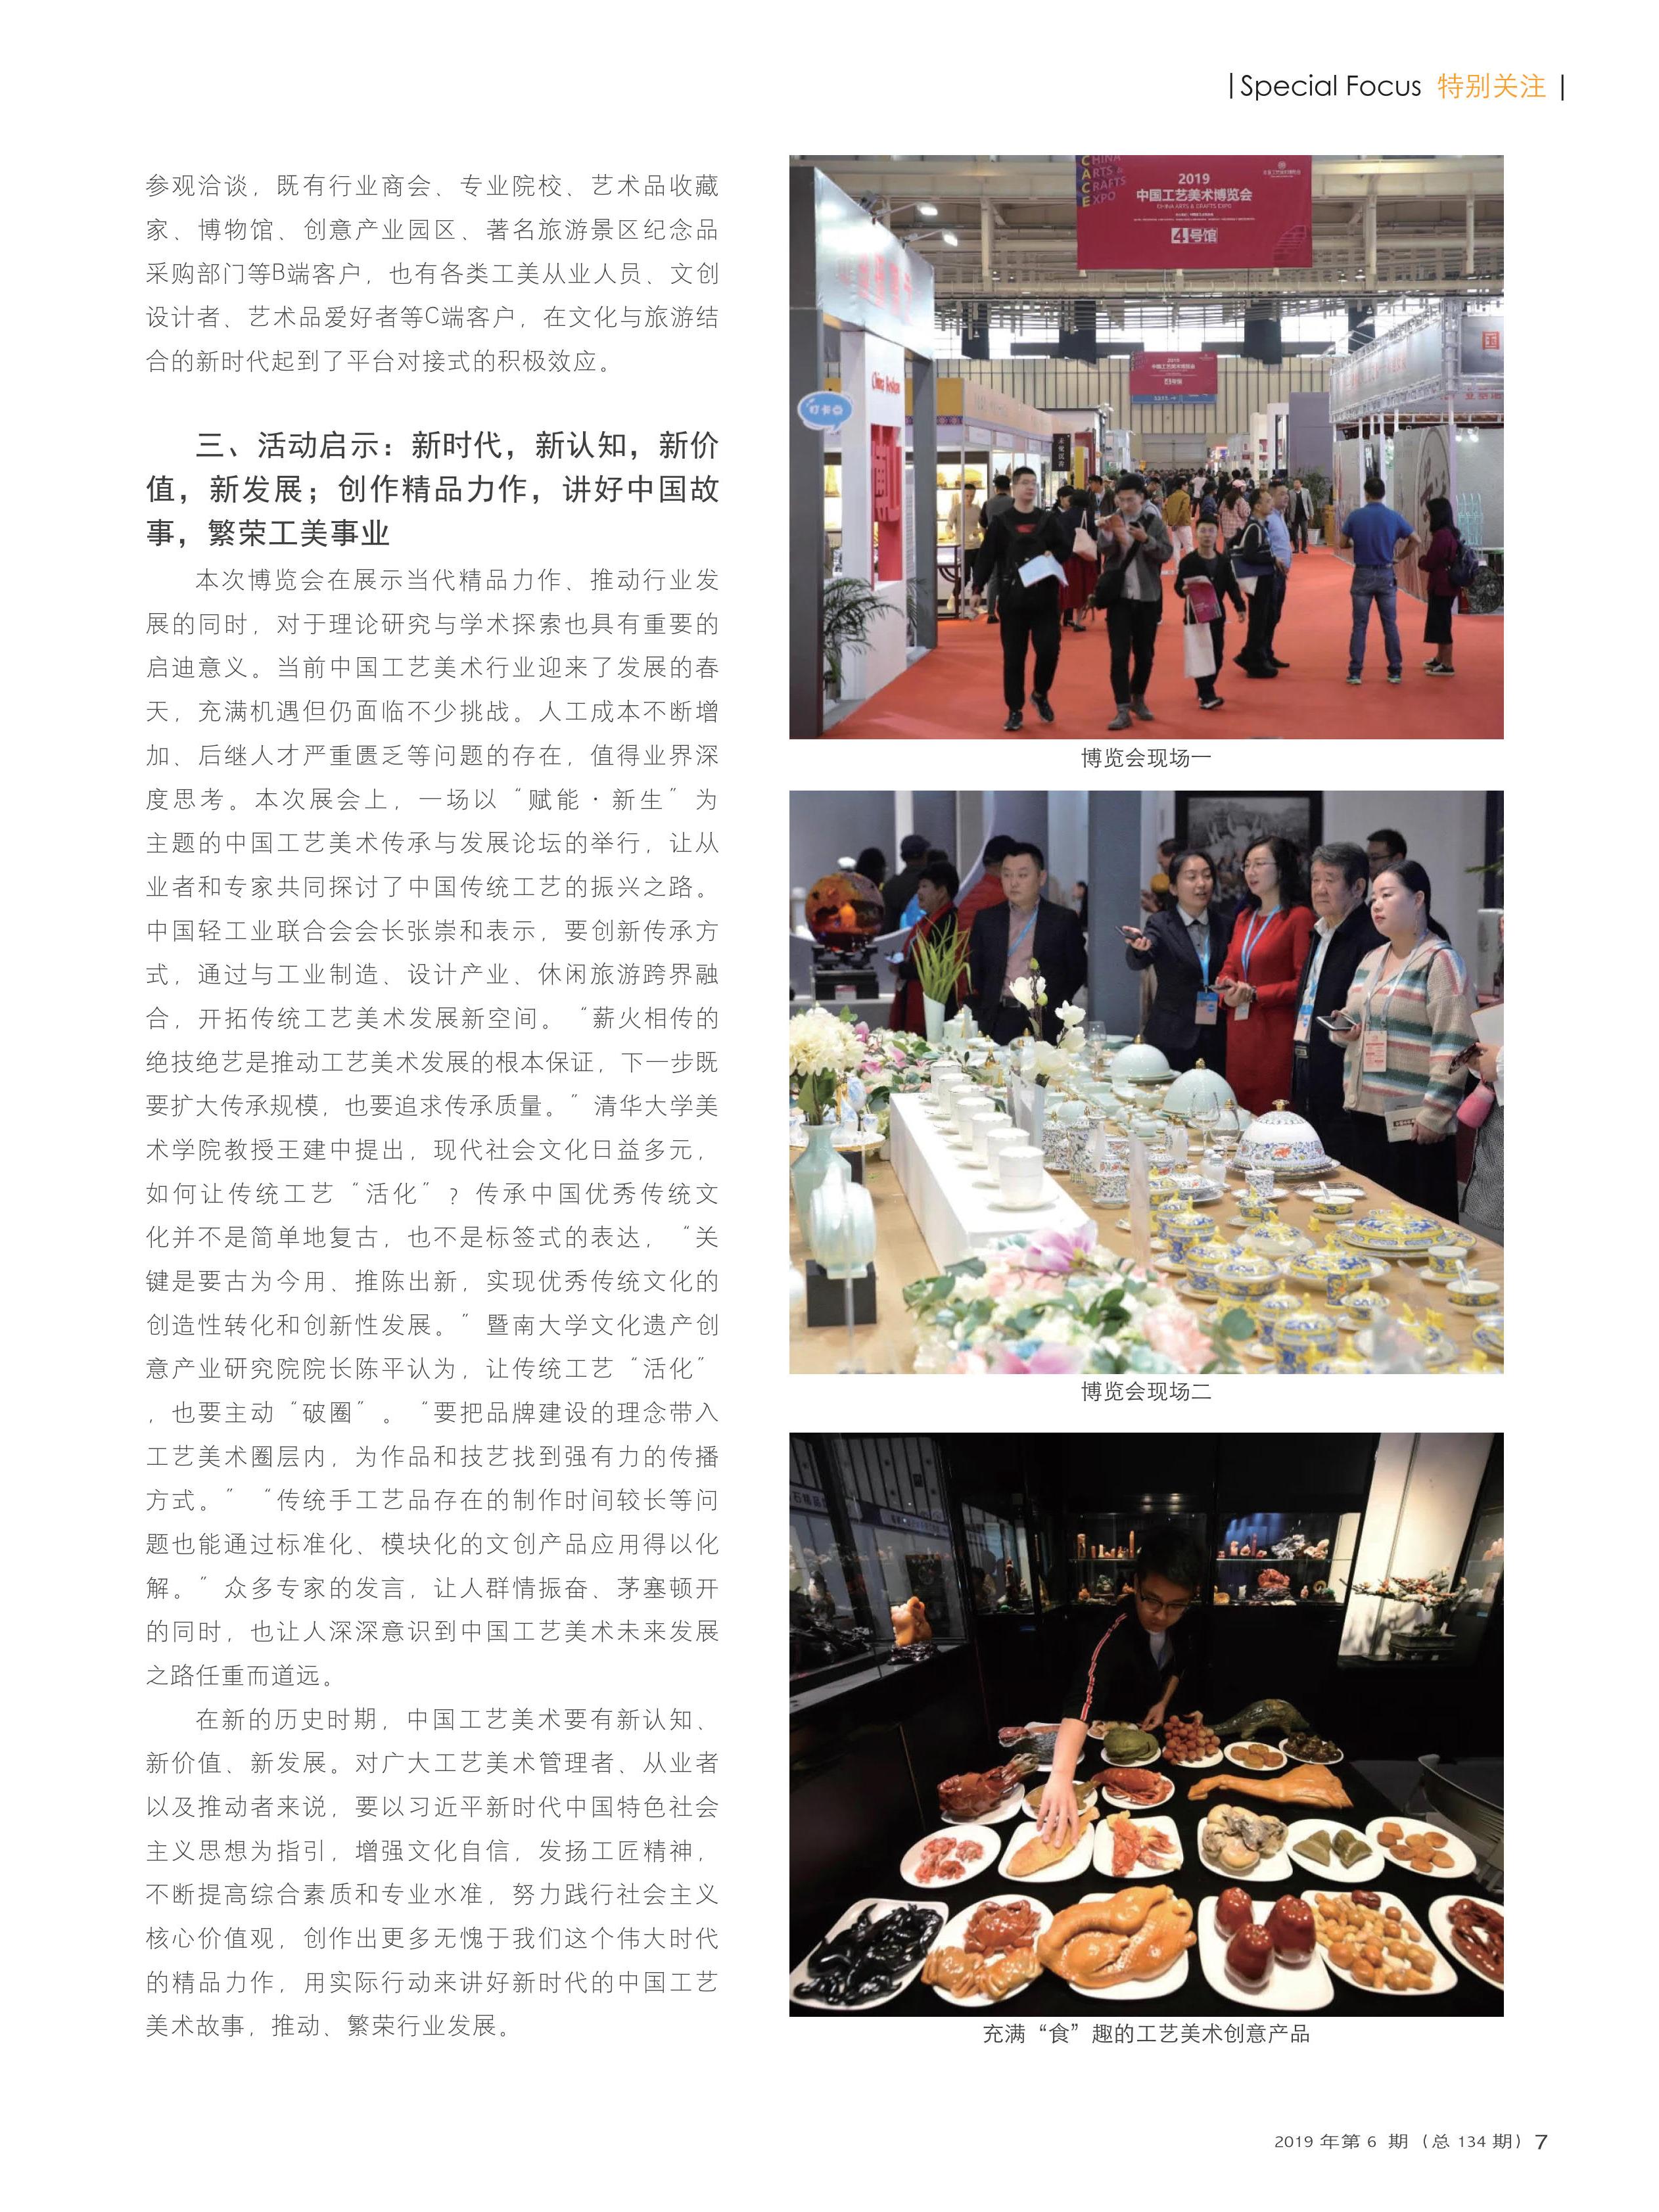 雍韬-2019中国工艺美术博览会在南京隆重举办_4.jpg